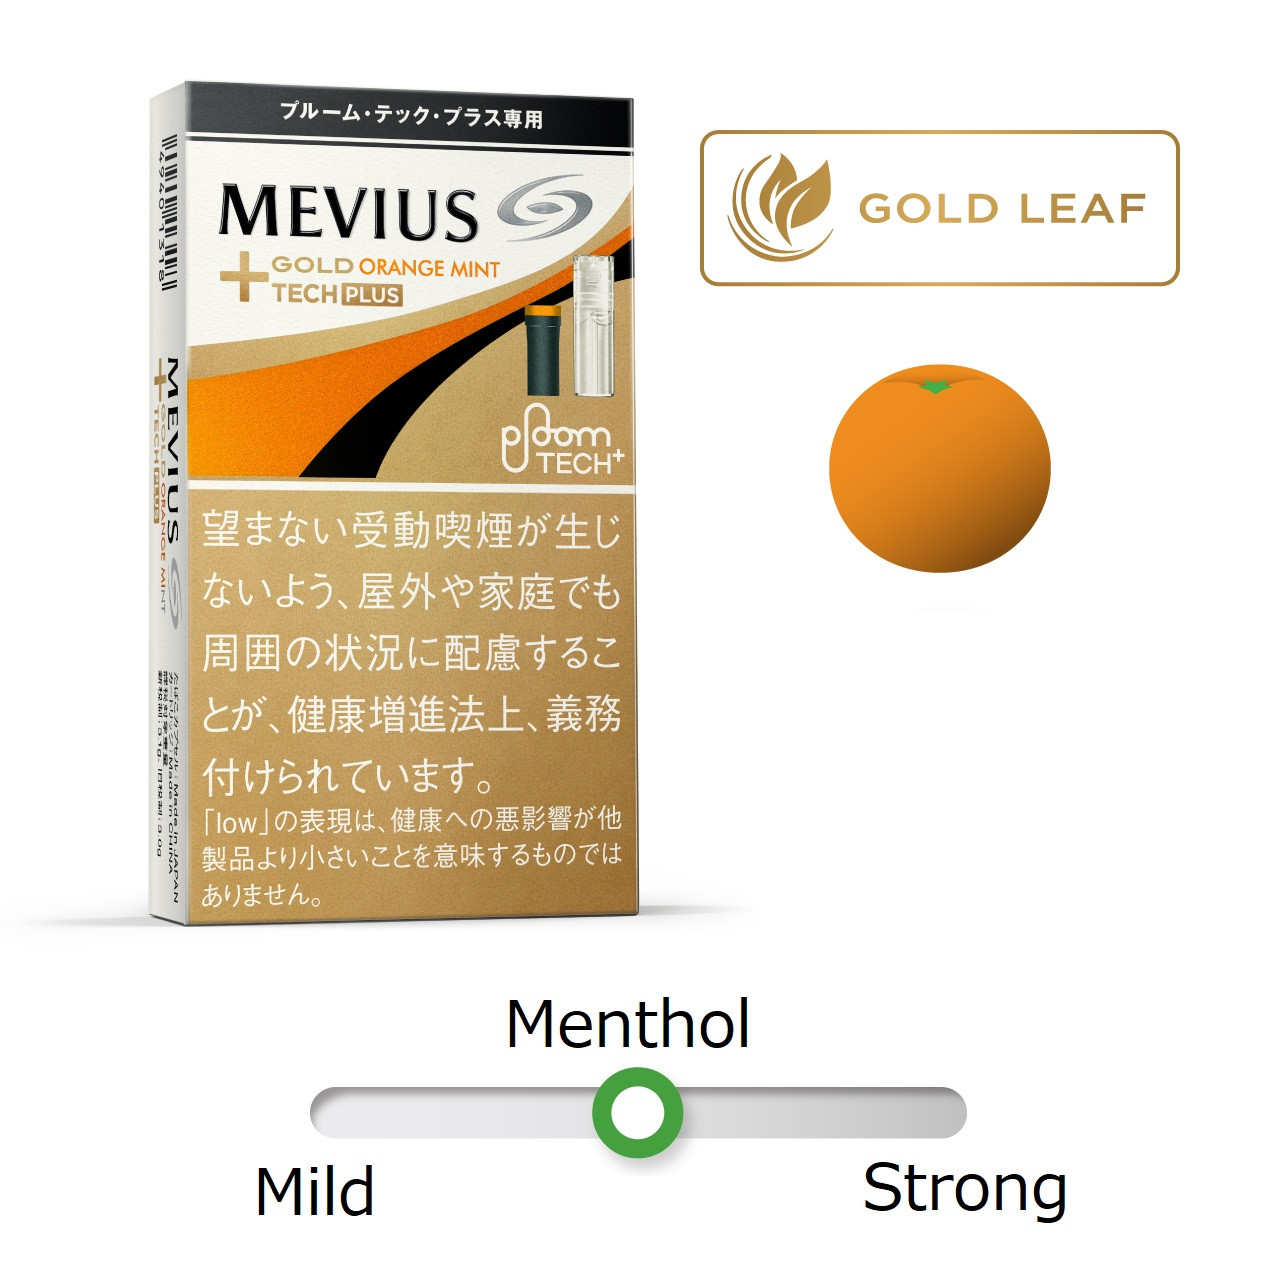 Ploom TECH + Plus For Mevius Gold Orange Mintha Ploom Tech Plus 1